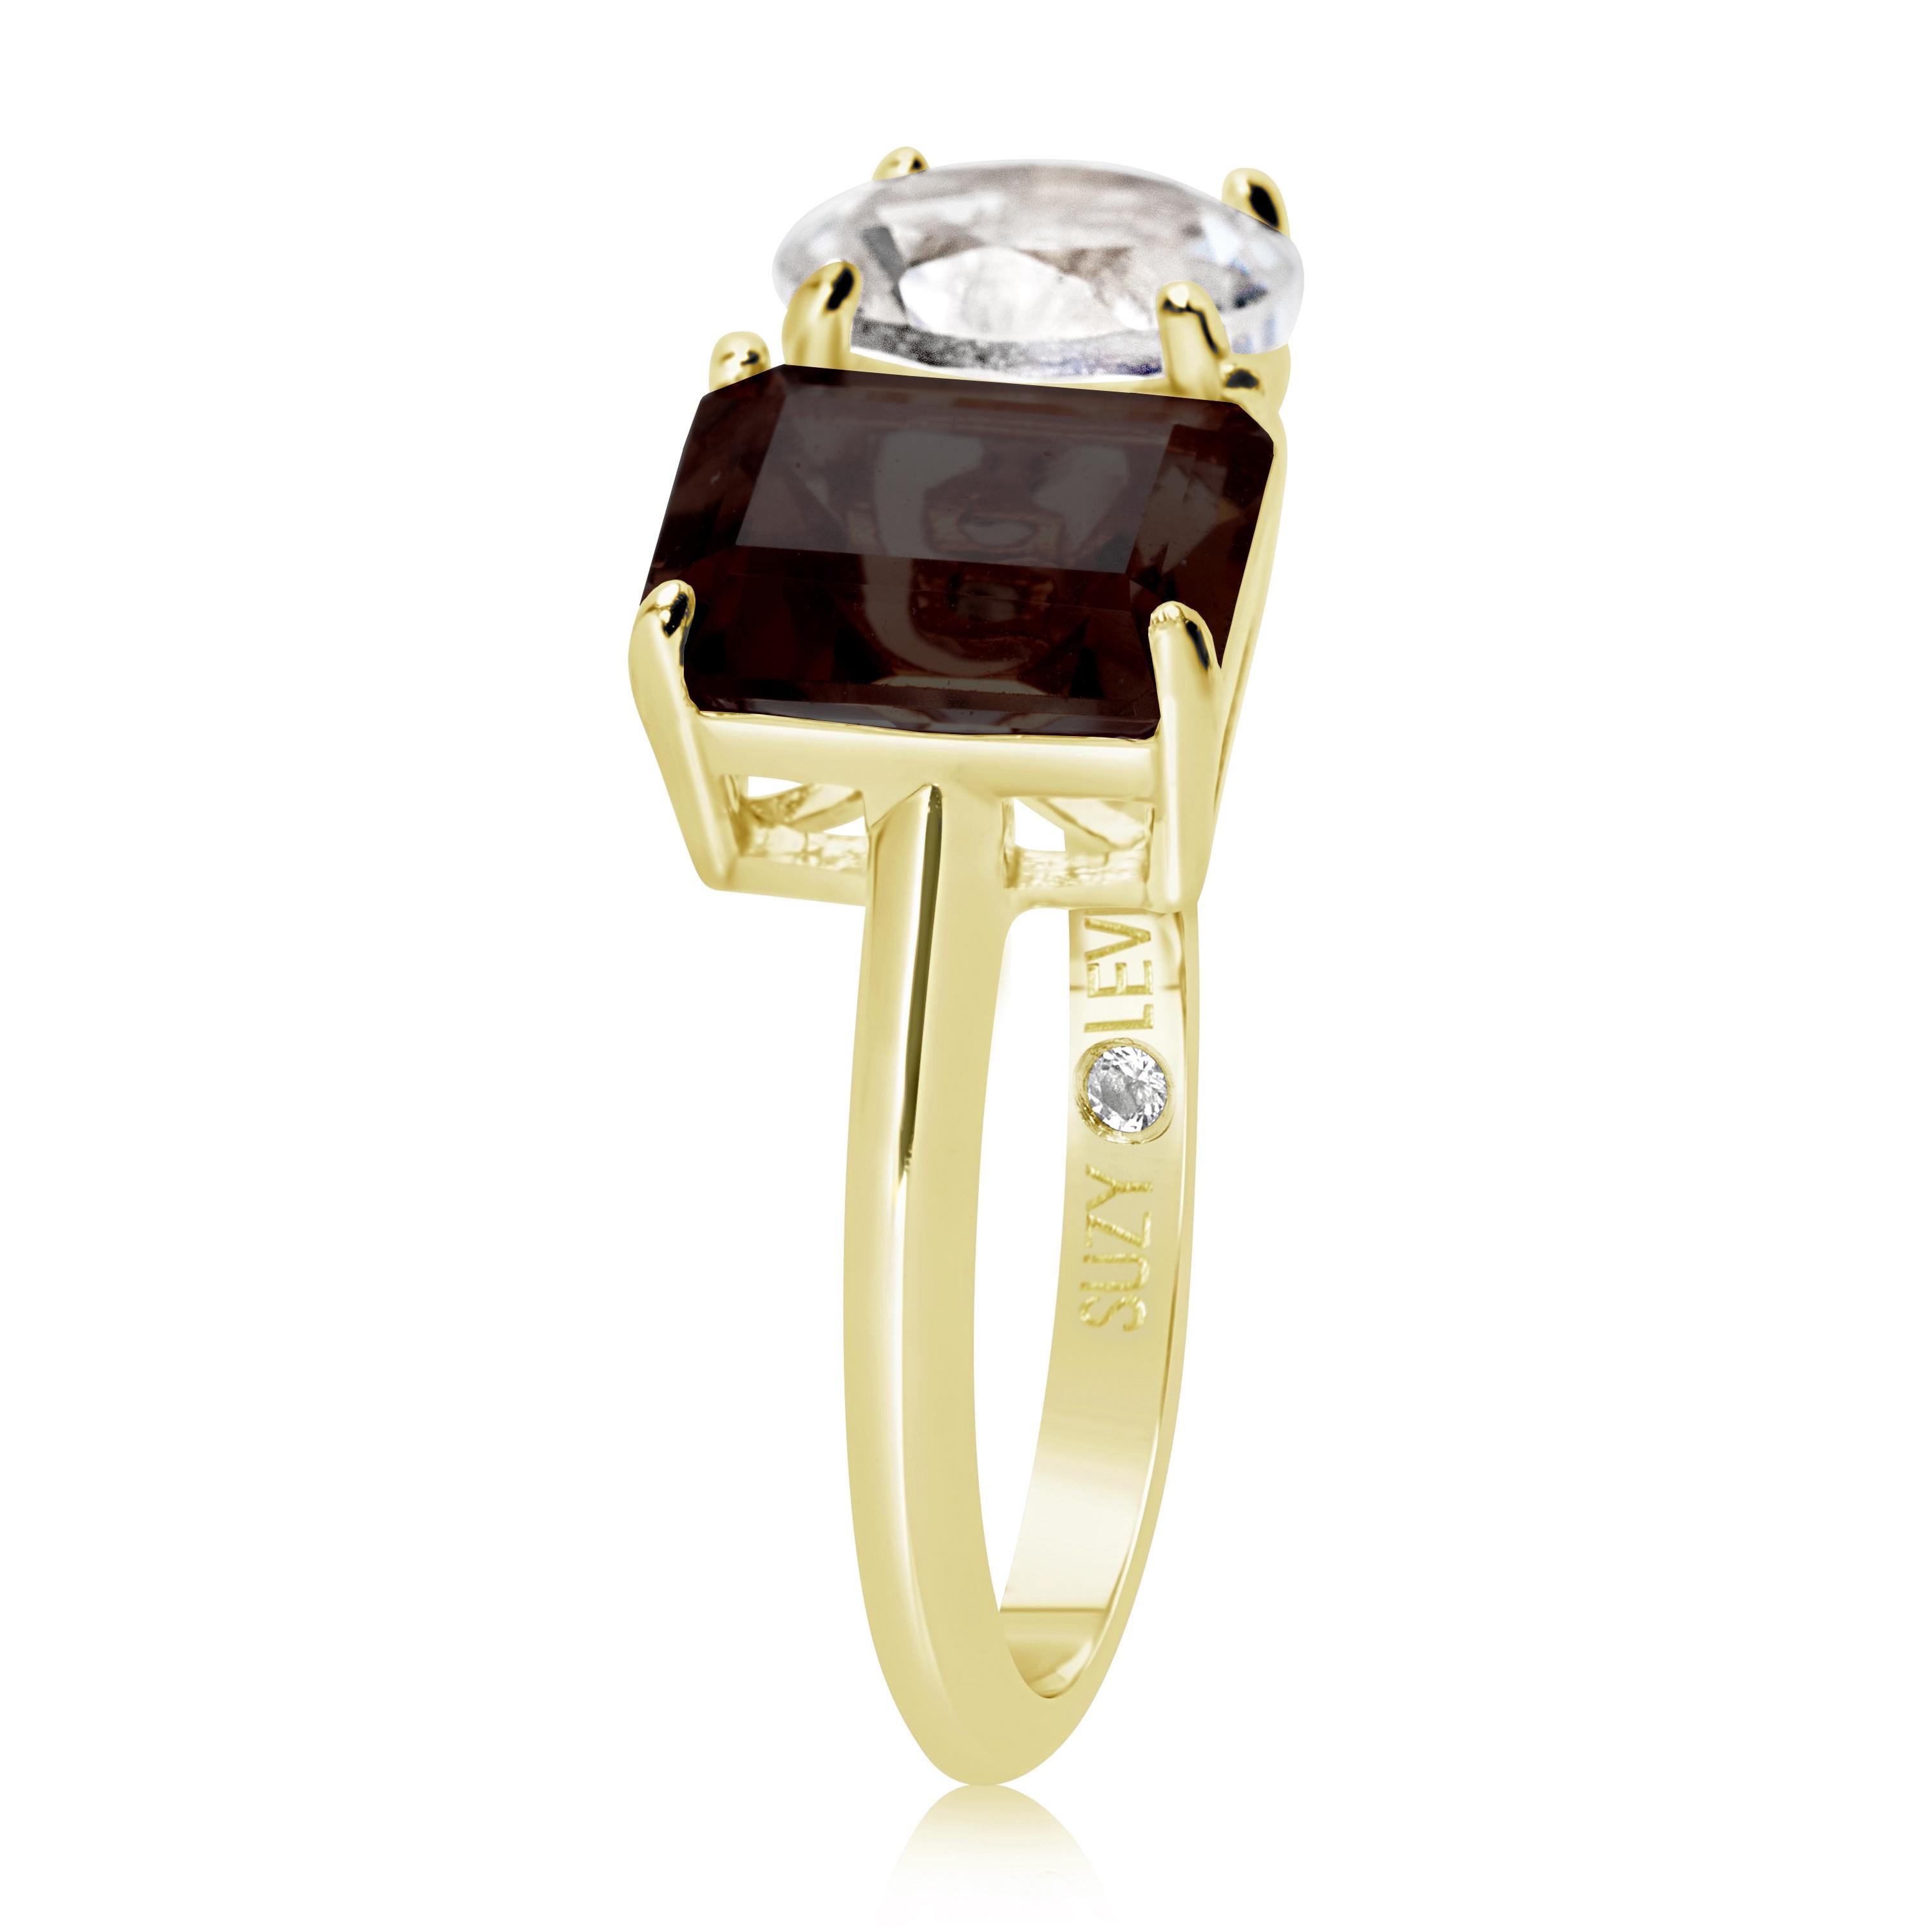 Dieser in Weiß- und Brauntönen schimmernde Ring von Suzy Levian liegt voll im Trend. Ein weißer Topas im Rundschliff und ein brauner Rauchquarz im Smaragdschliff bilden ein perfekt aufeinander abgestimmtes Paar. Dieser Ring symbolisiert eine